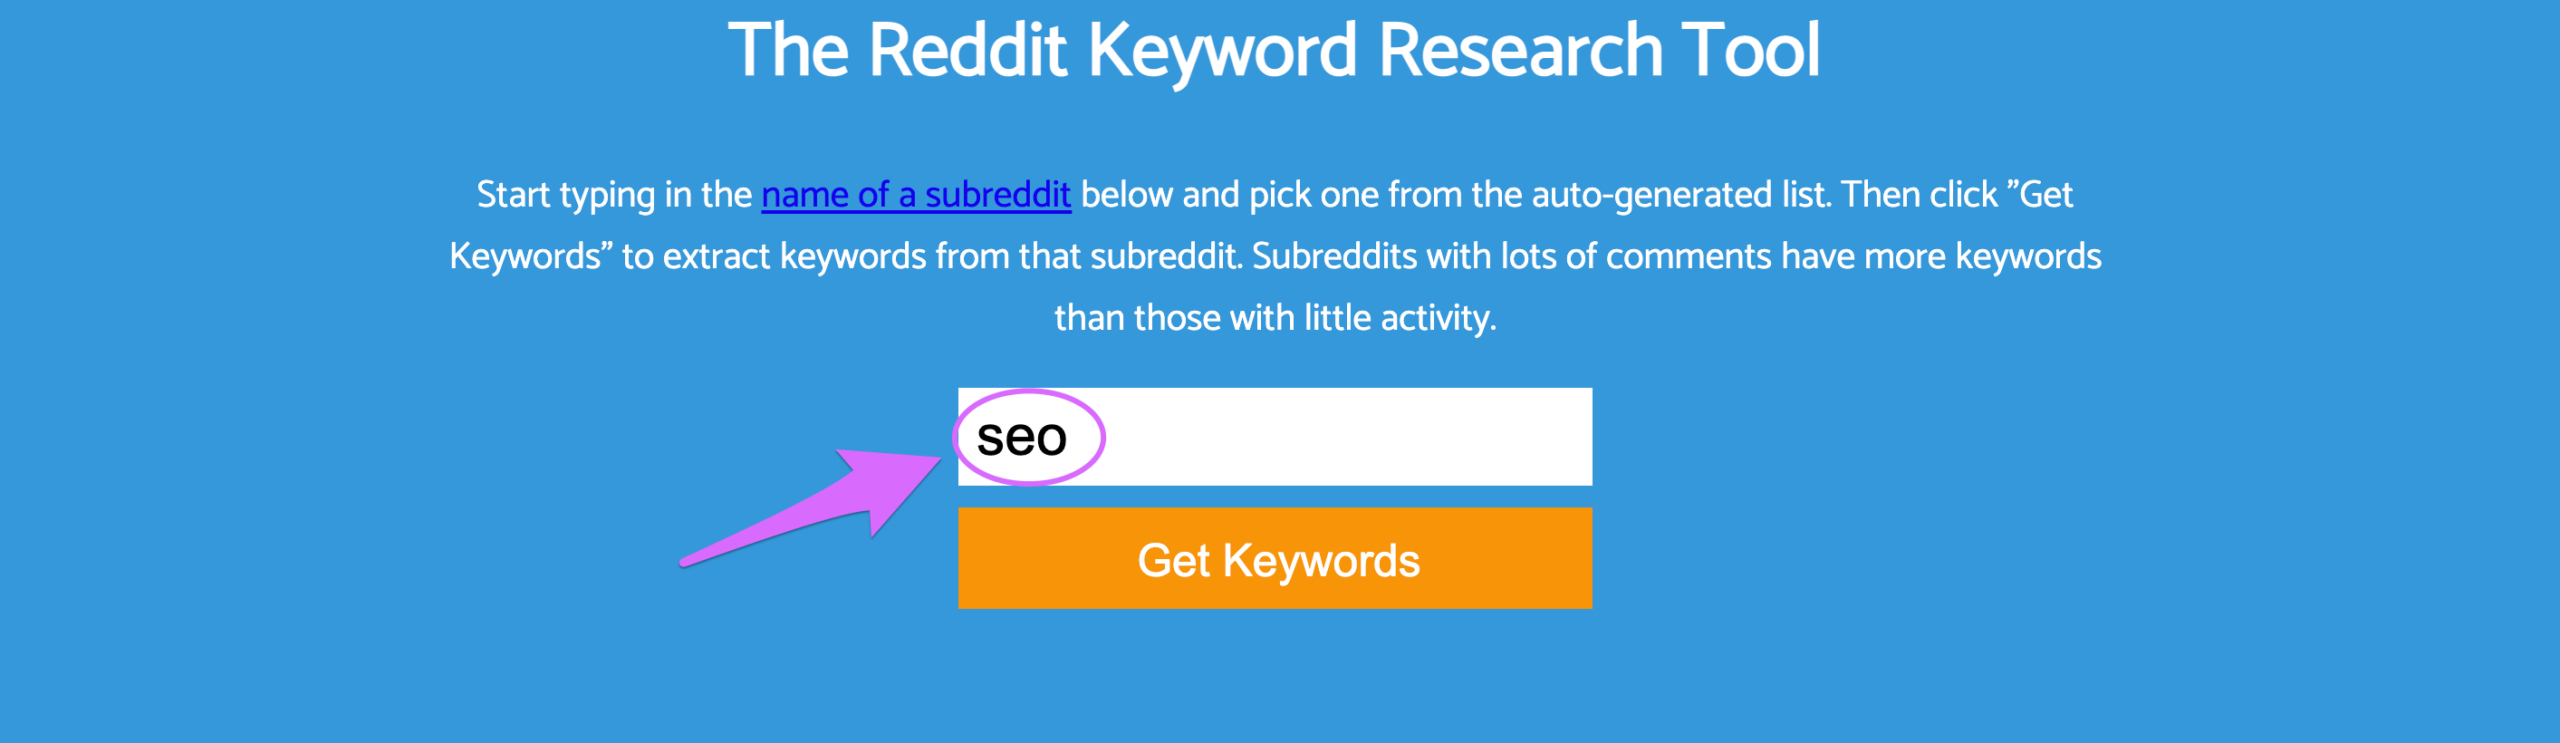 keyworditt reddit homepage